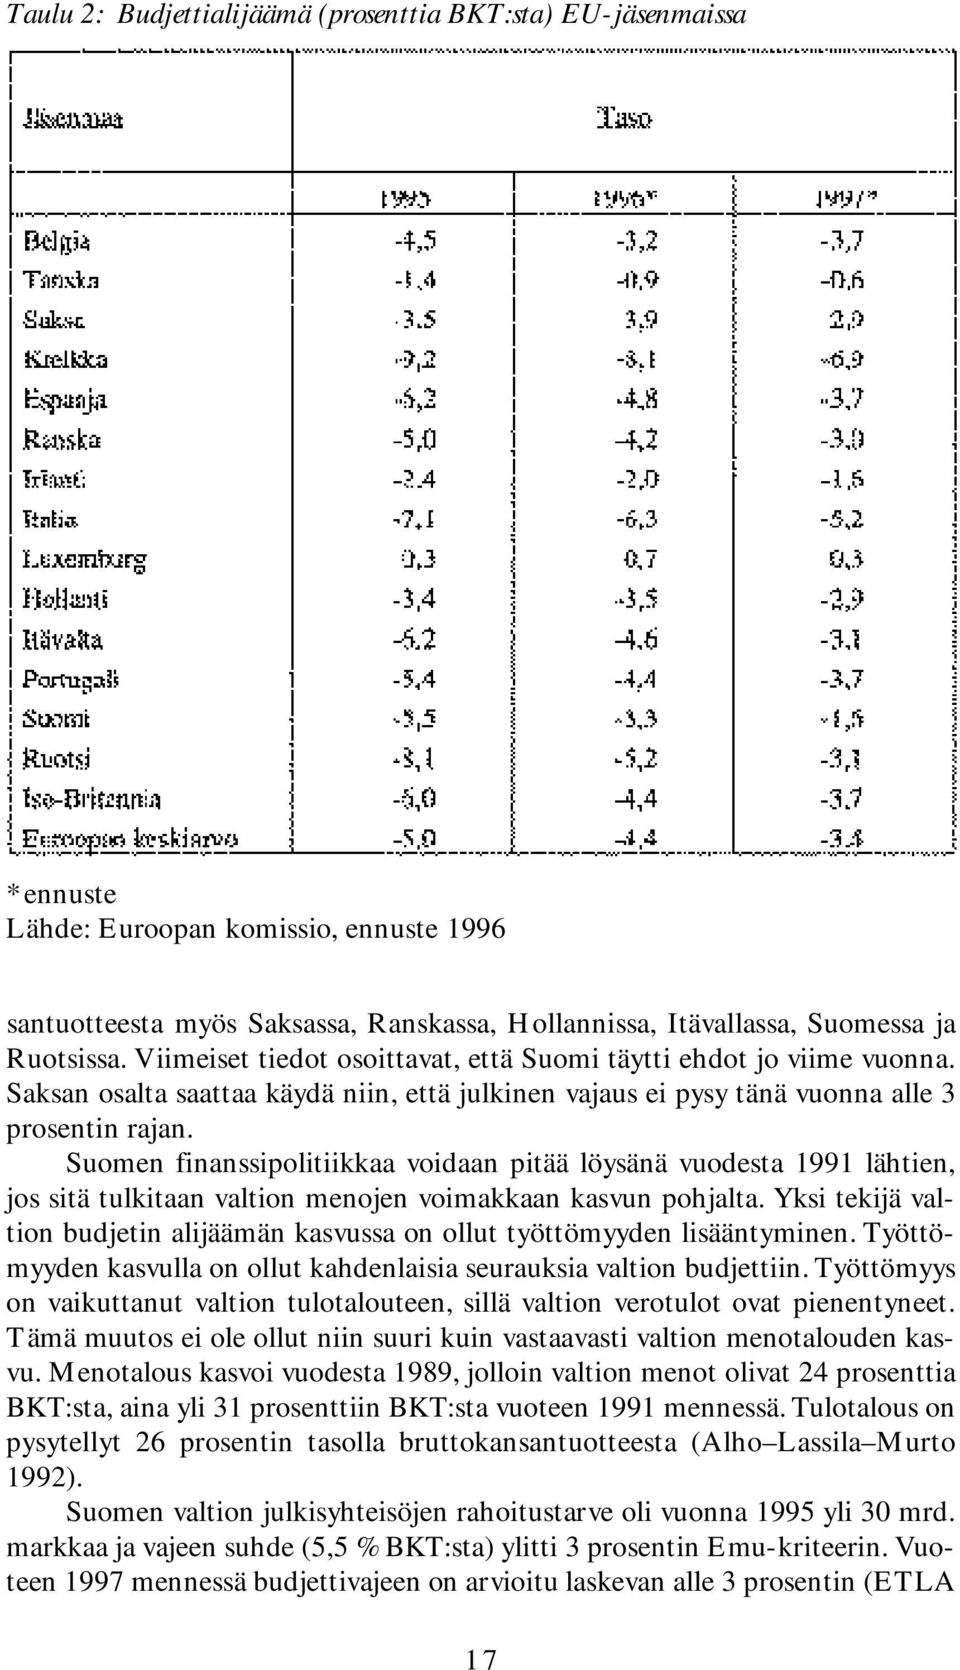 Suomen finanssipolitiikkaa voidaan pitää löysänä vuodesta 1991 lähtien, jos sitä tulkitaan valtion menojen voimakkaan kasvun pohjalta.